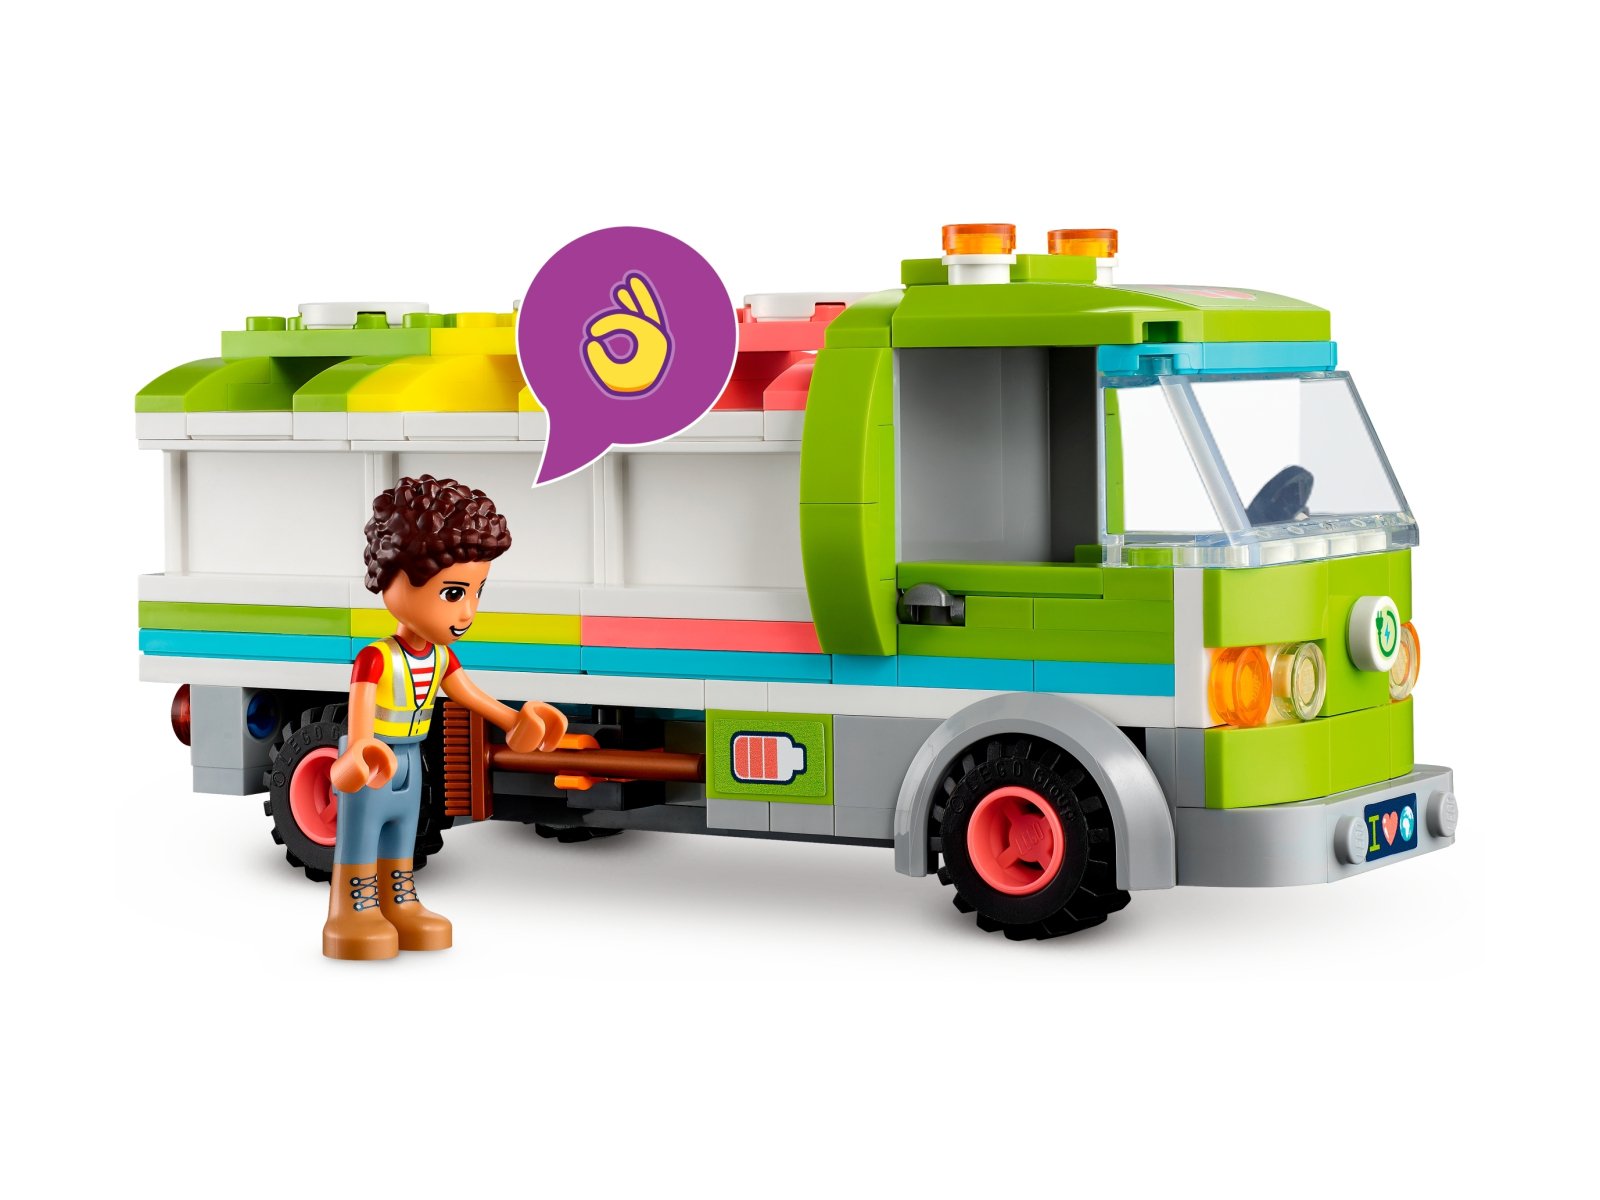 LEGO Friends Ciężarówka recyklingowa 41712